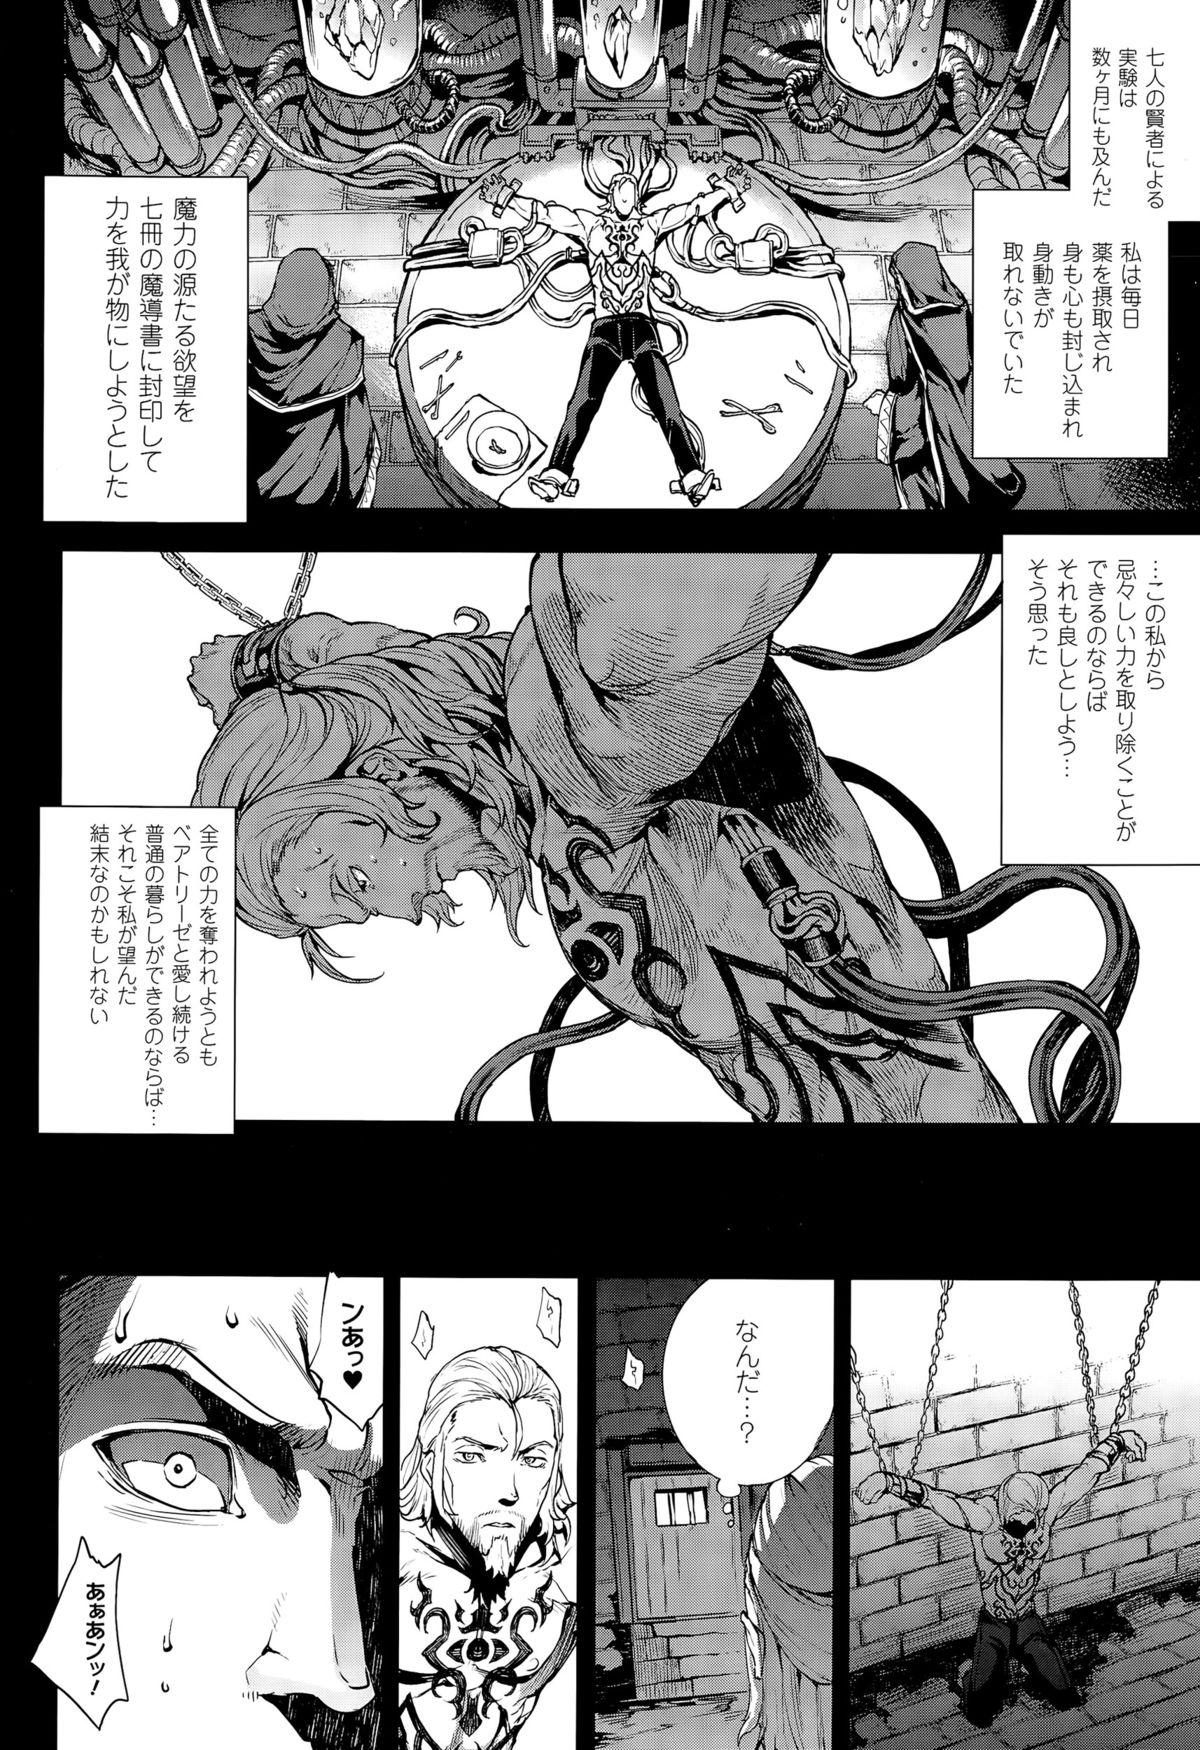 [Erect Sawaru] Shinkyoku no Grimoire -PANDRA saga 2nd story- CH 13-20 116